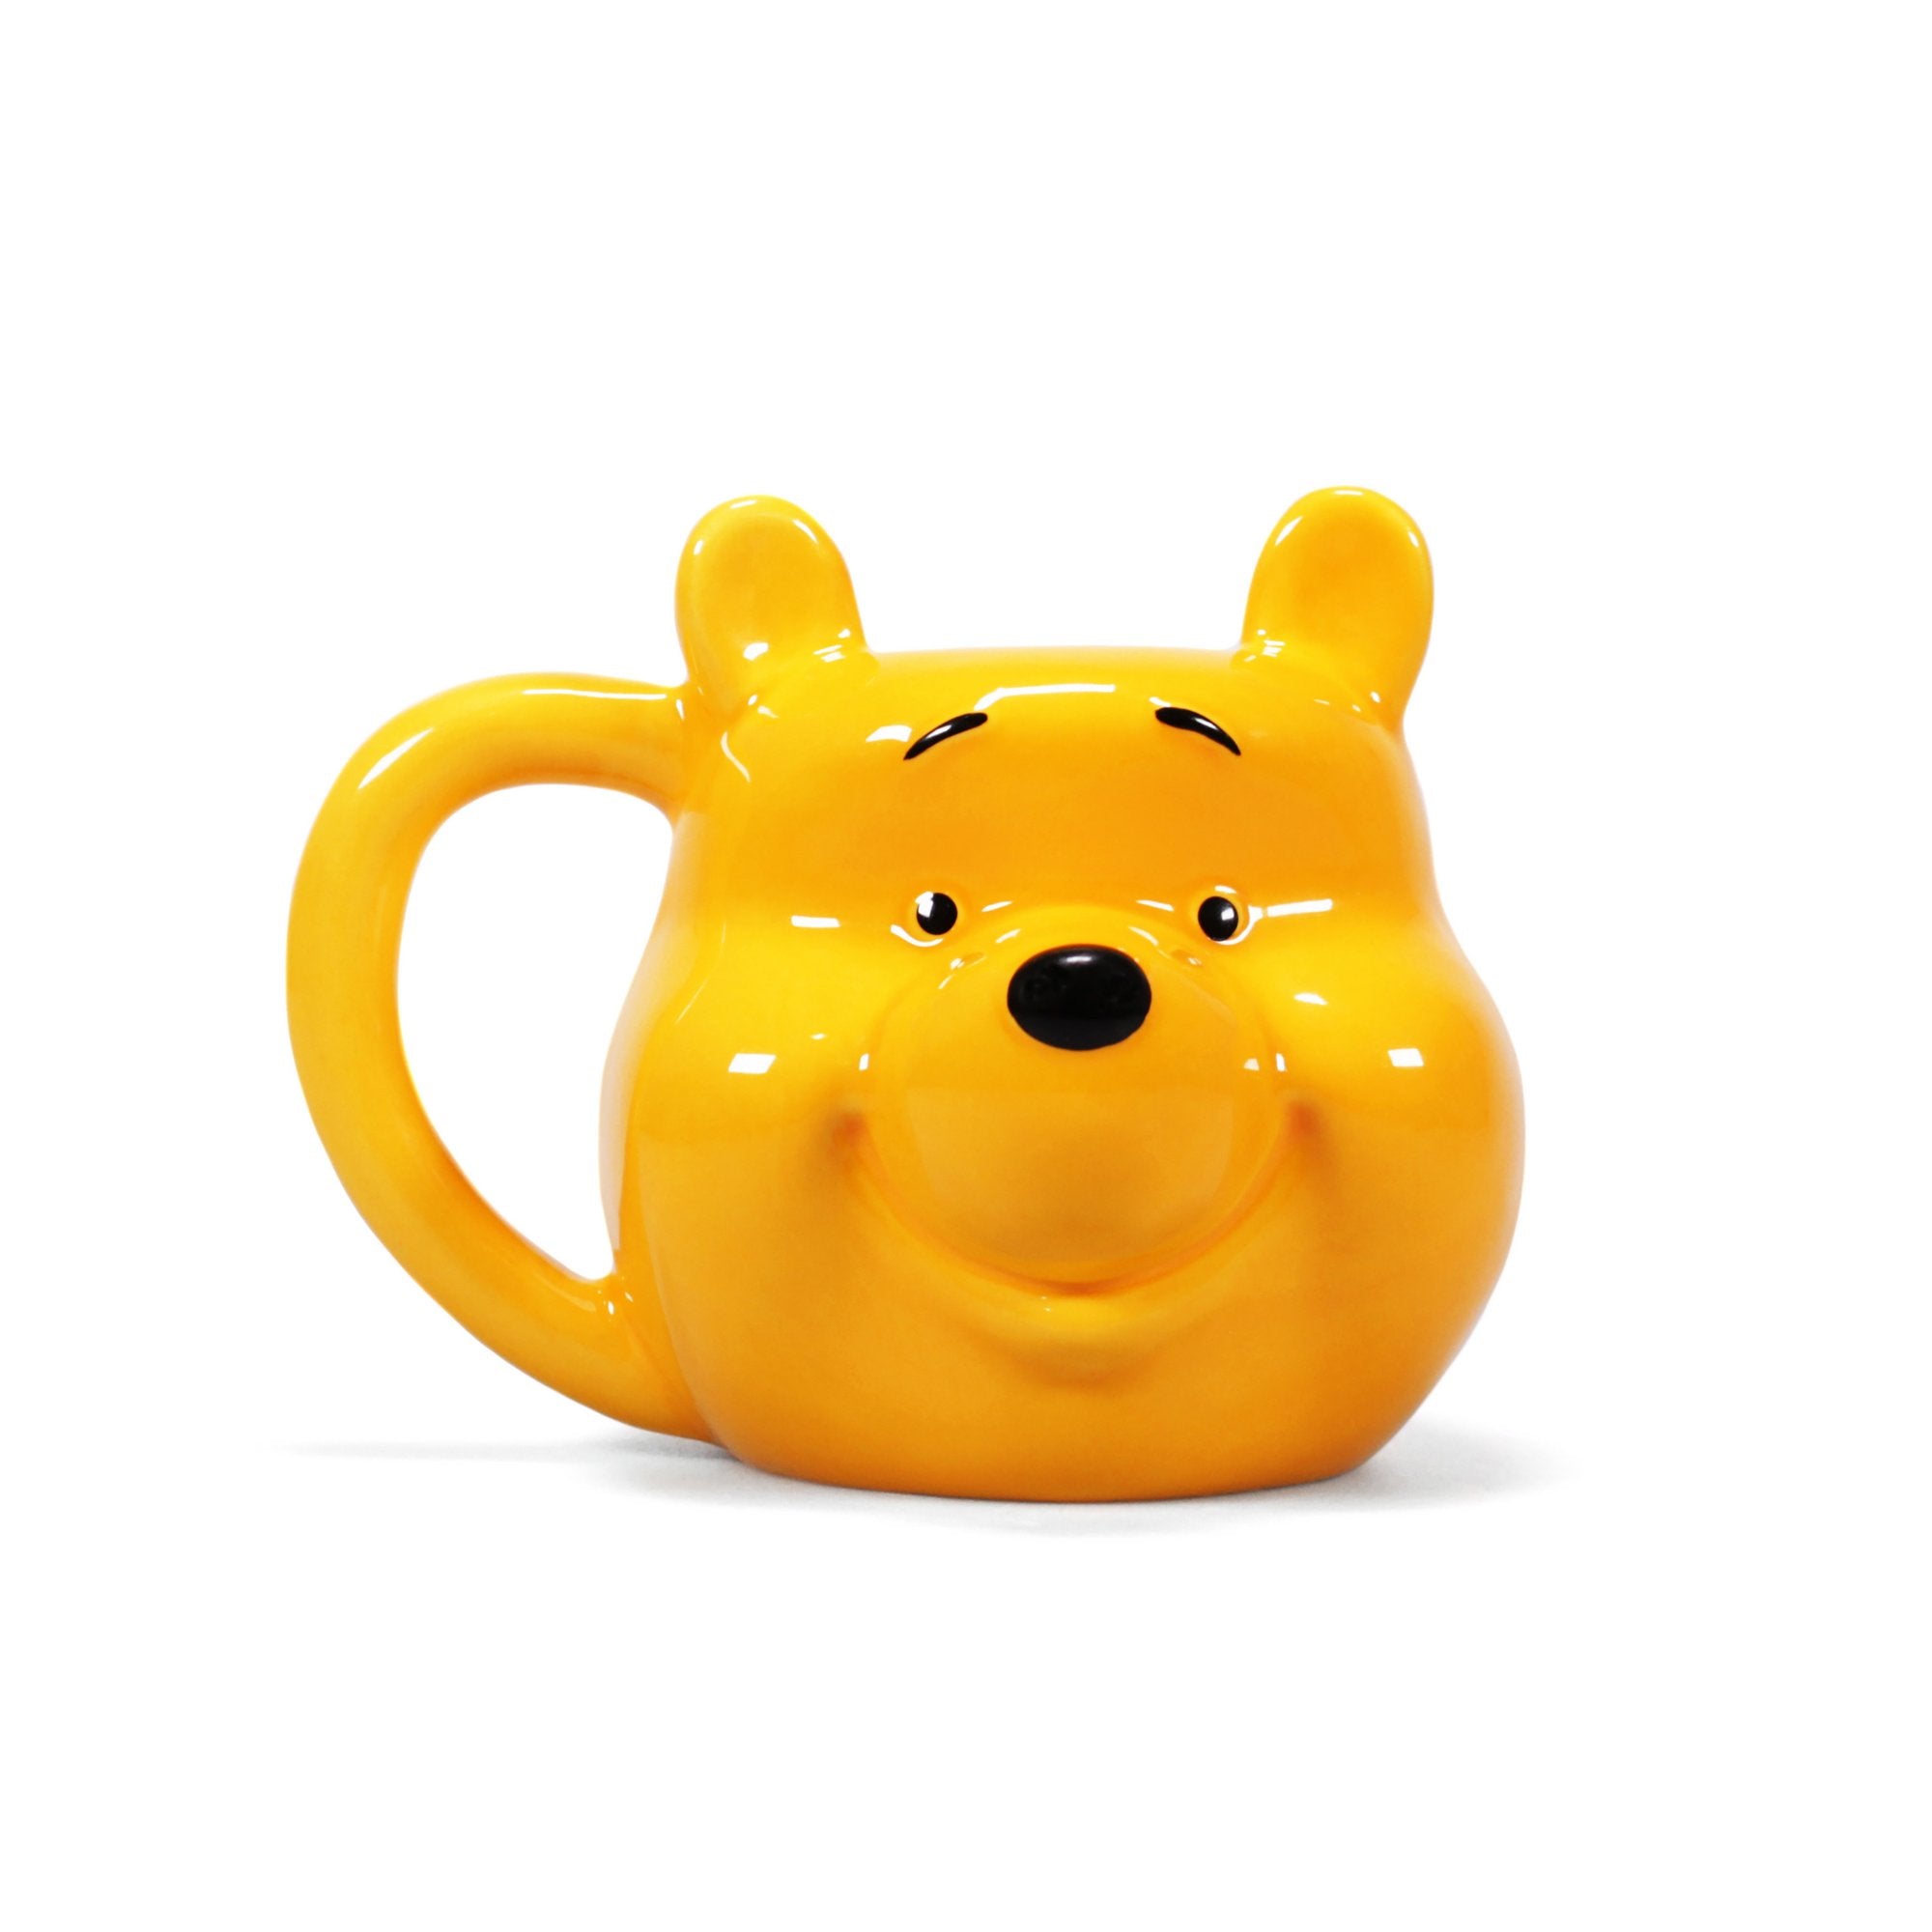 Winnie the Pooh Shaped Mug - Silly Old Bear